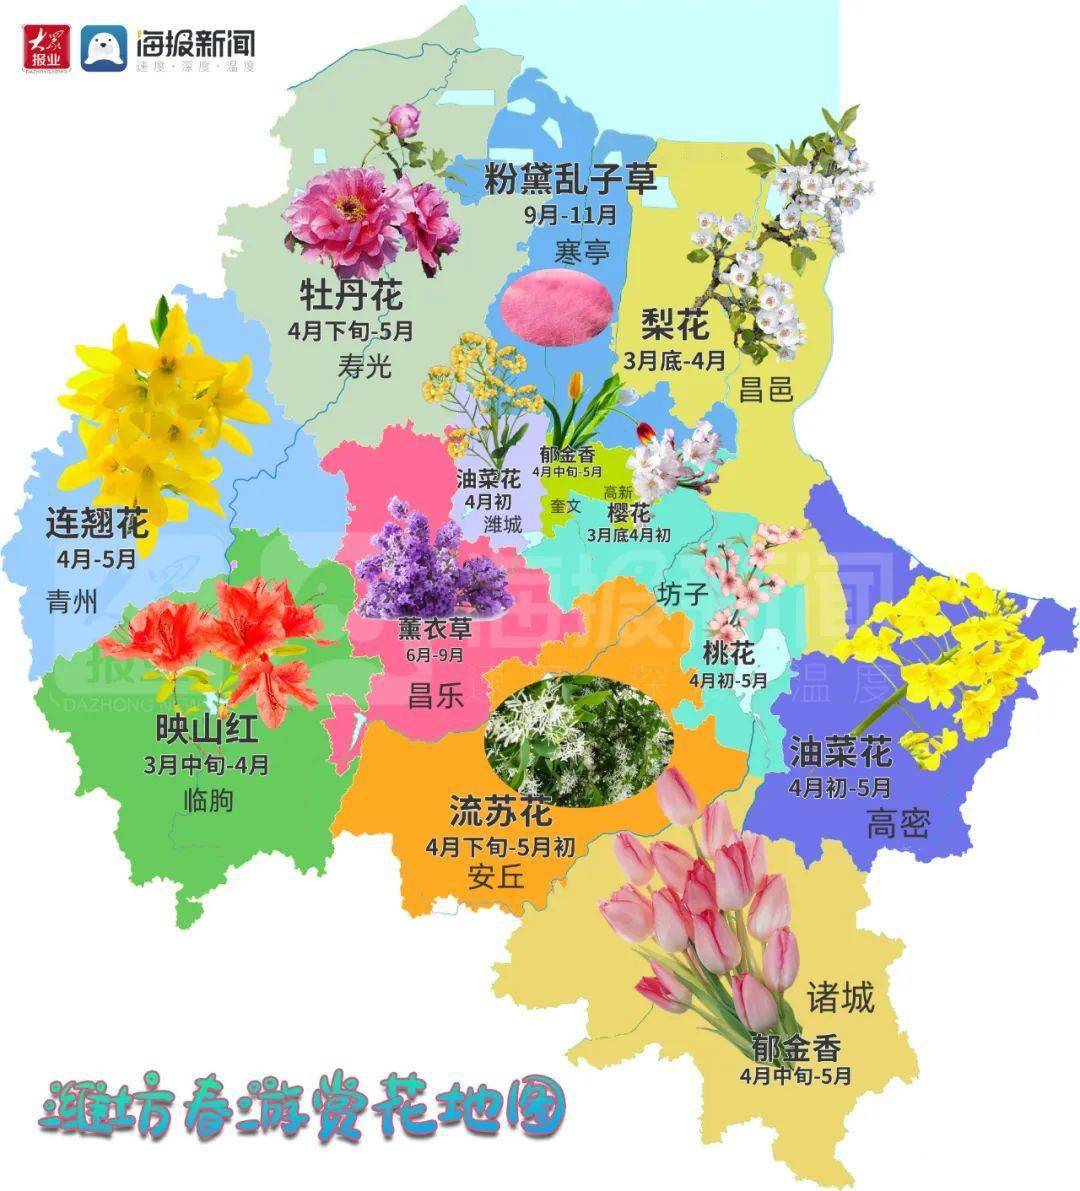 潍坊最新赏花地图出炉!28个地点随手一拍都能惊艳朋友圈